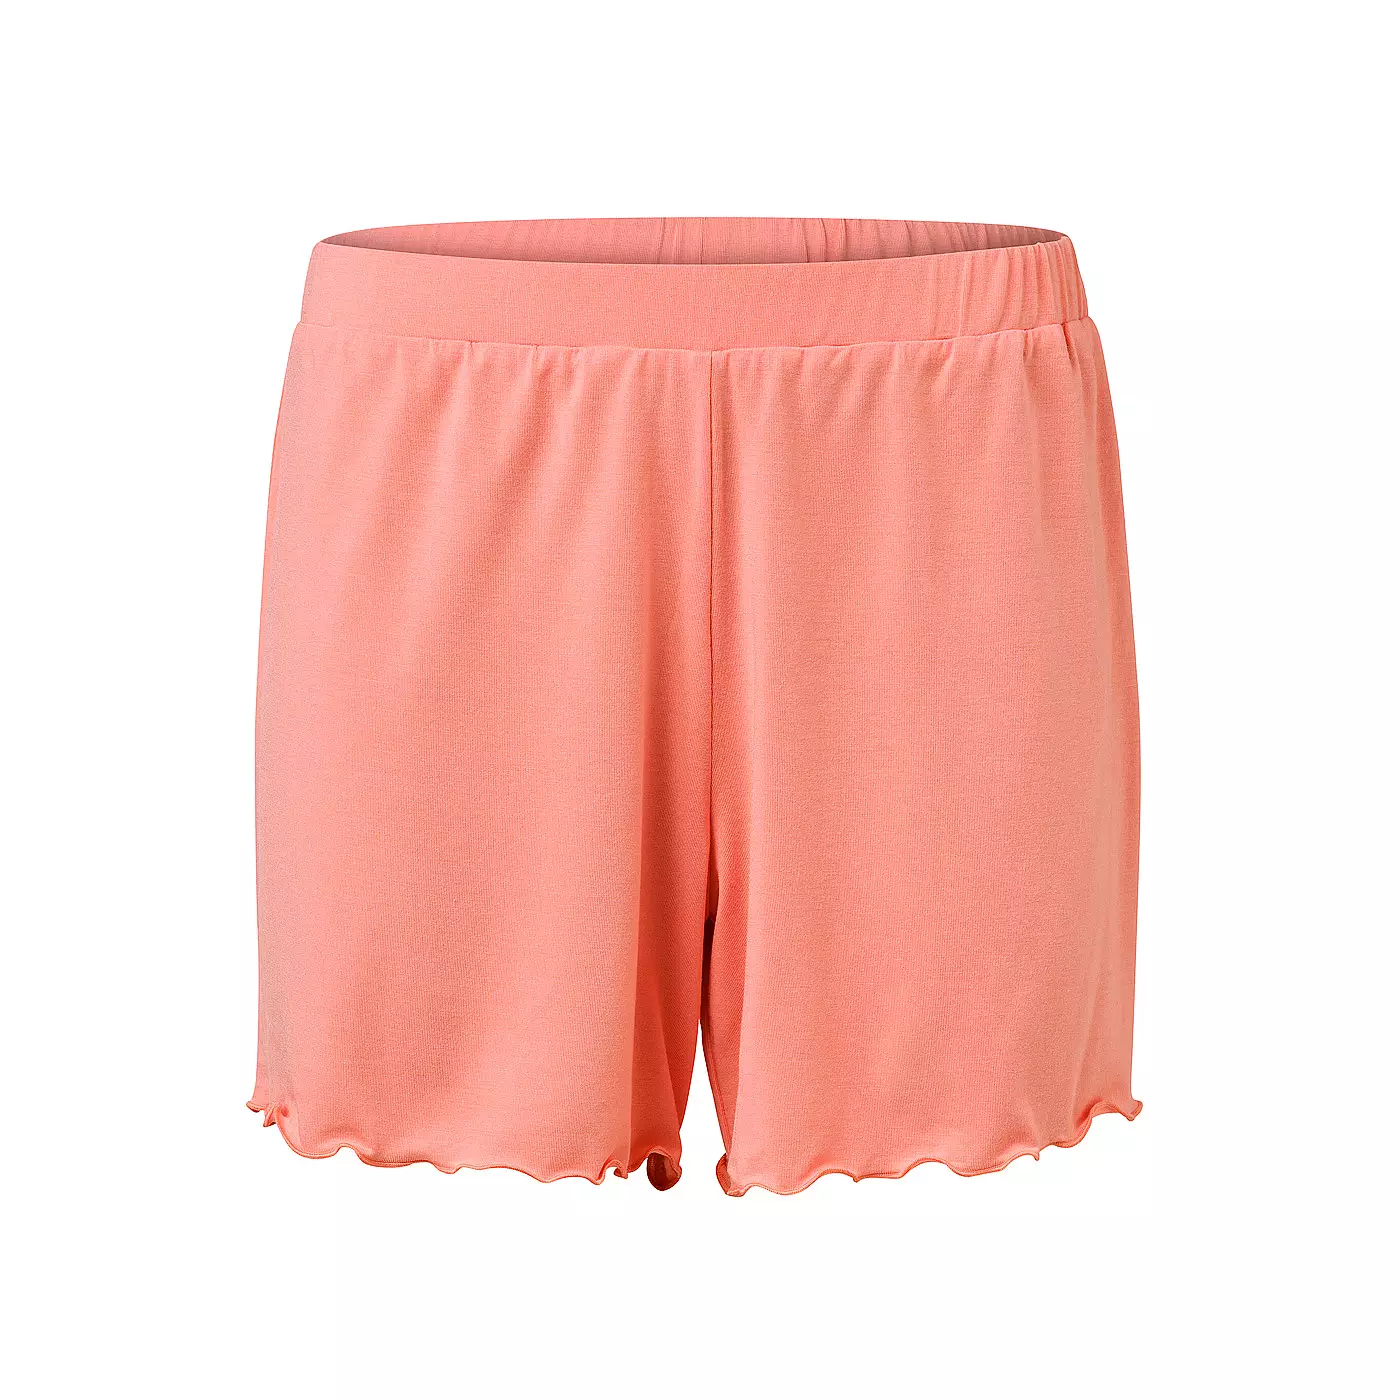 Shorts Peach Pink - PEARL